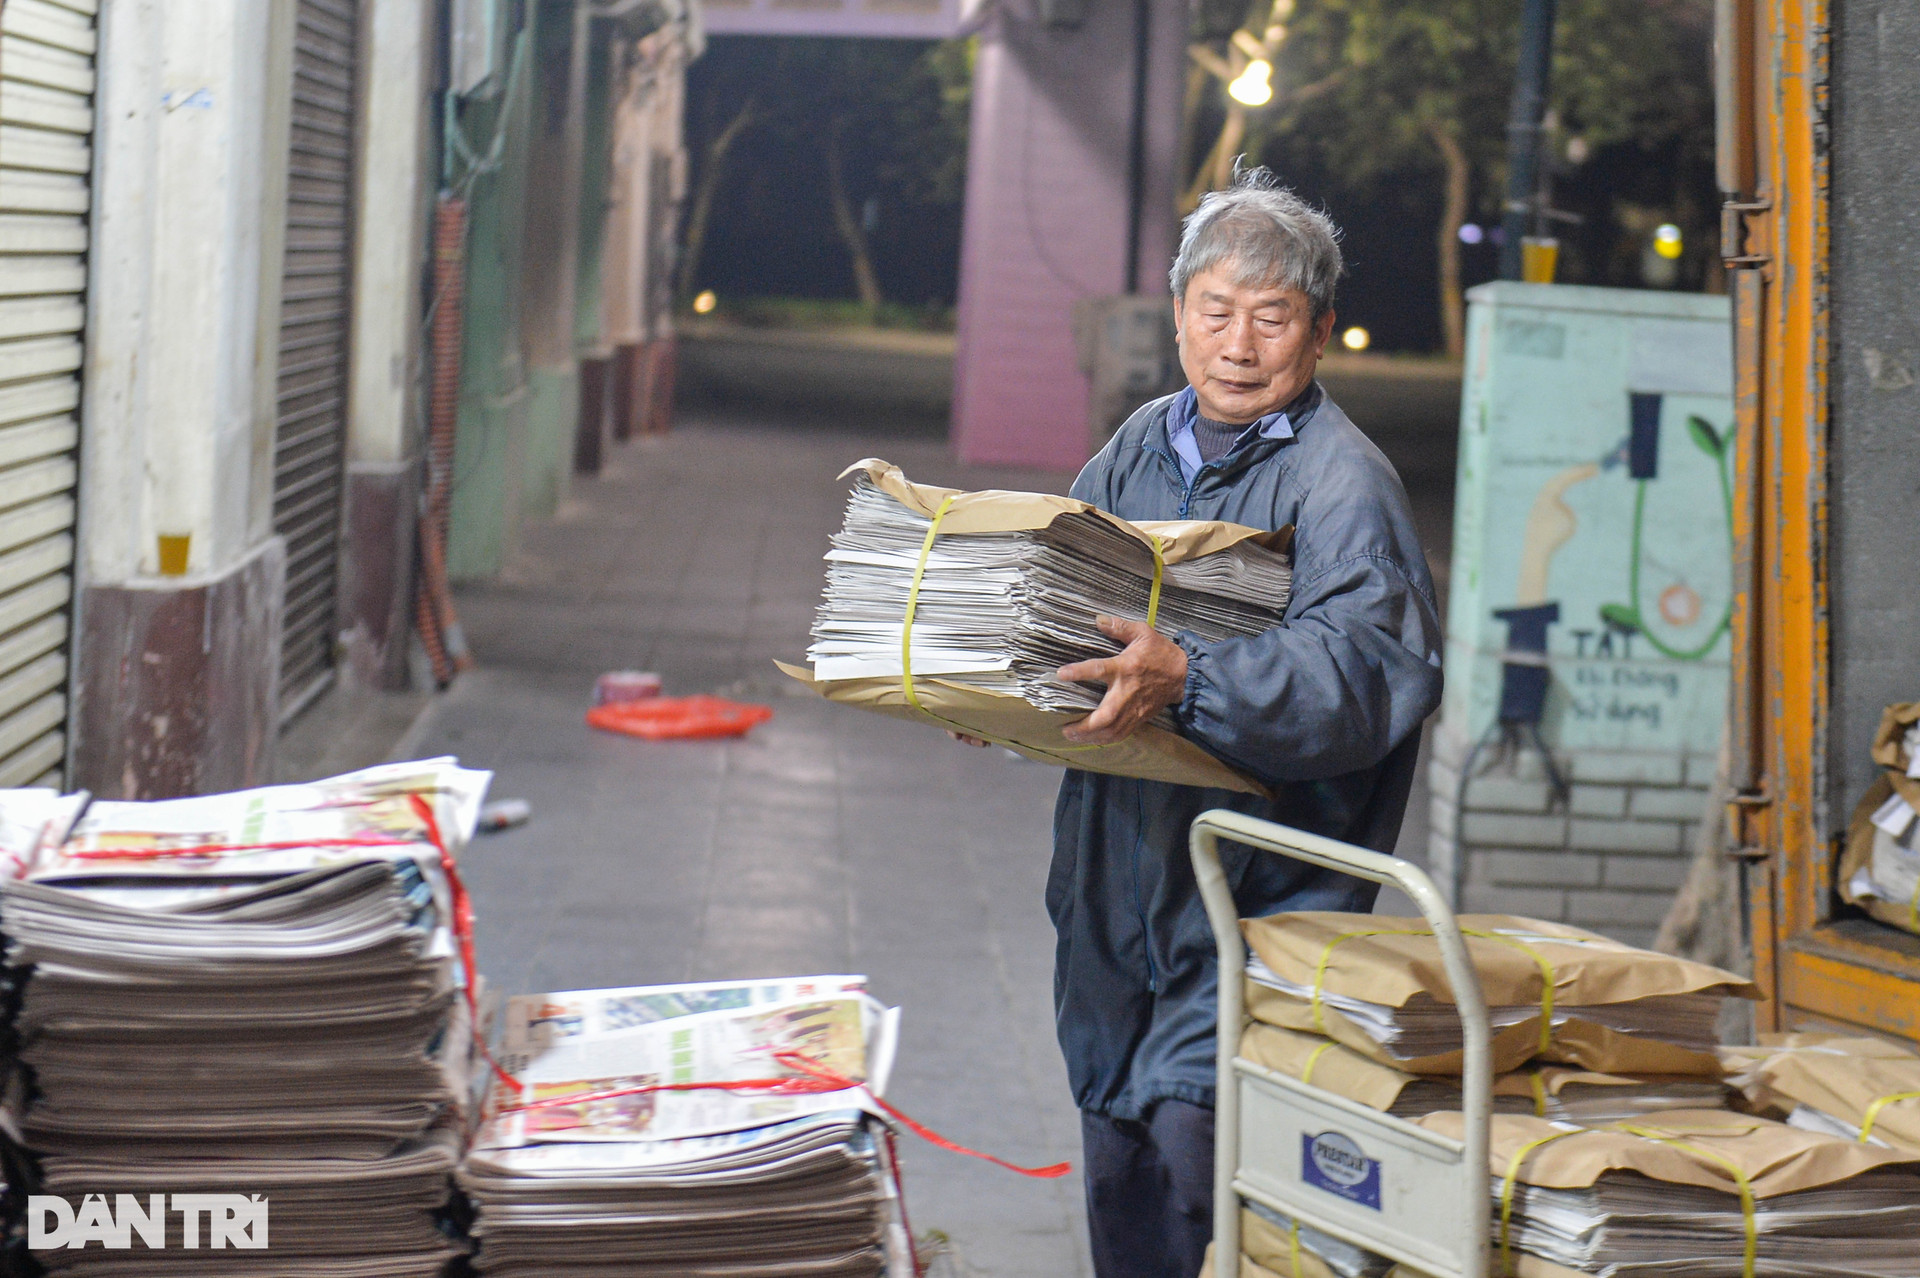 Chợ báo giấy độc nhất Hà Nội, họp từ tờ mờ sáng - 2